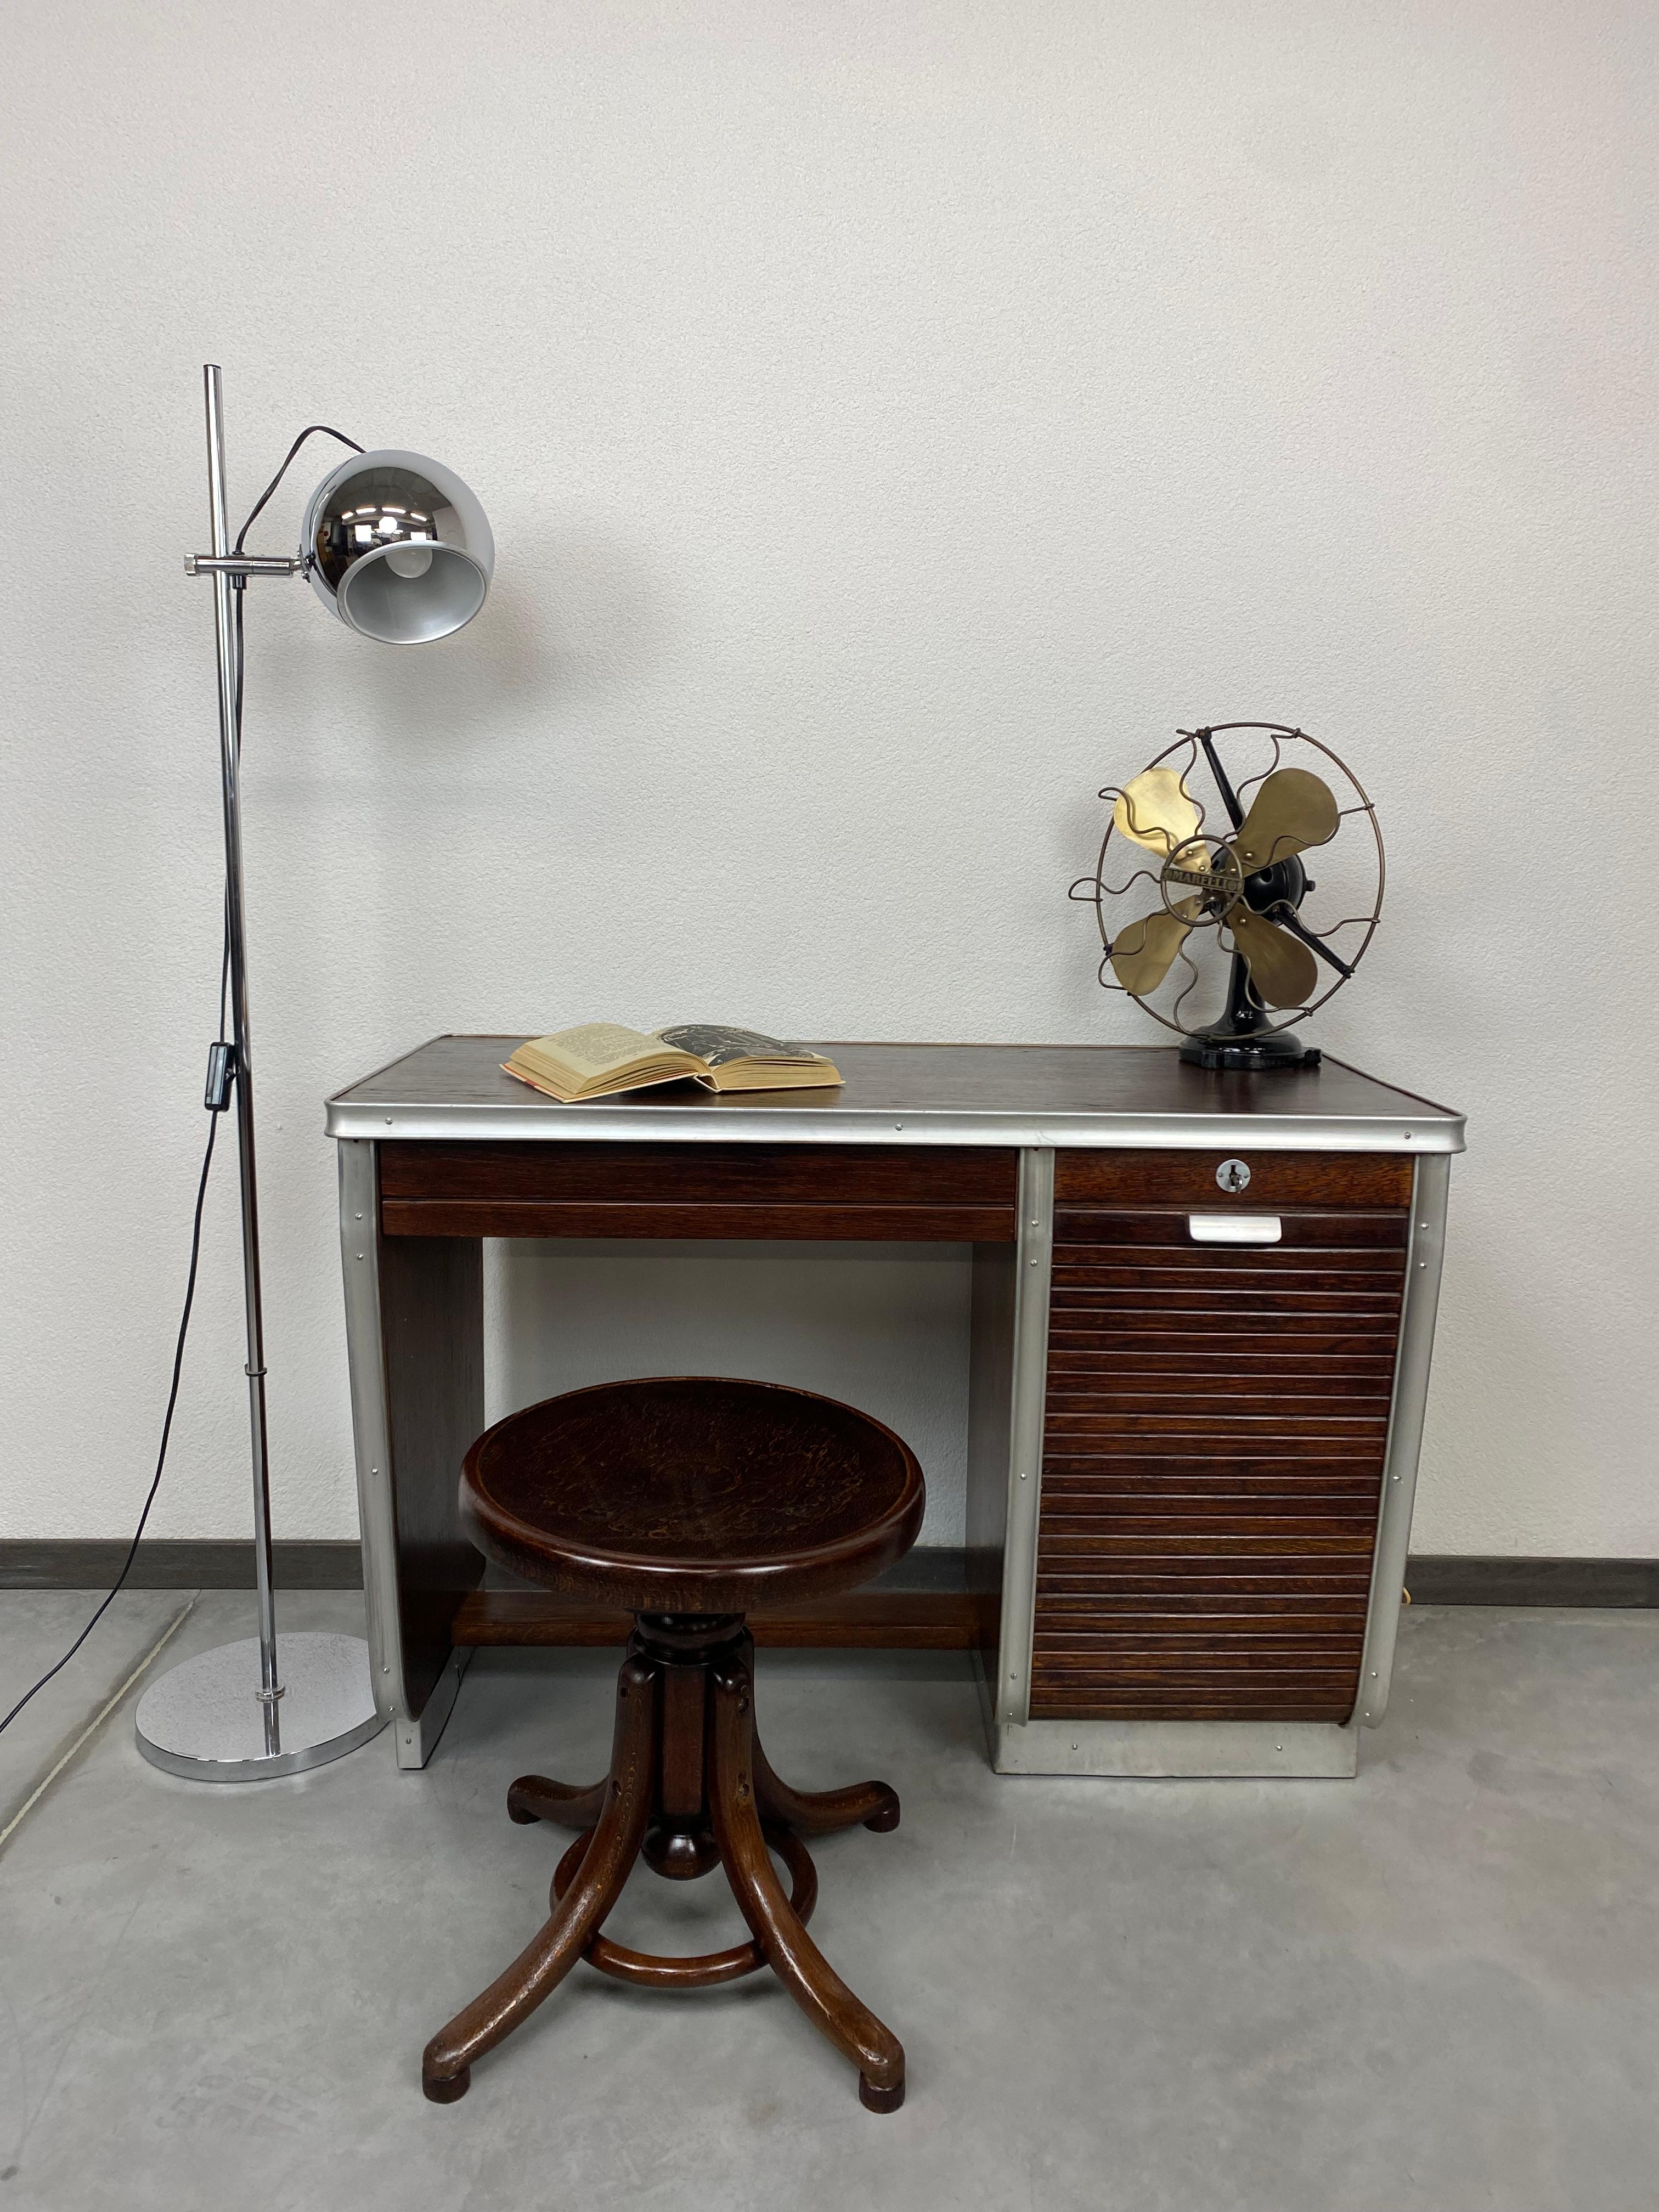 Kleiner funktionalistischer Schreibtisch aus den 1930er Jahren, professionell gebeizt und neu poliert.